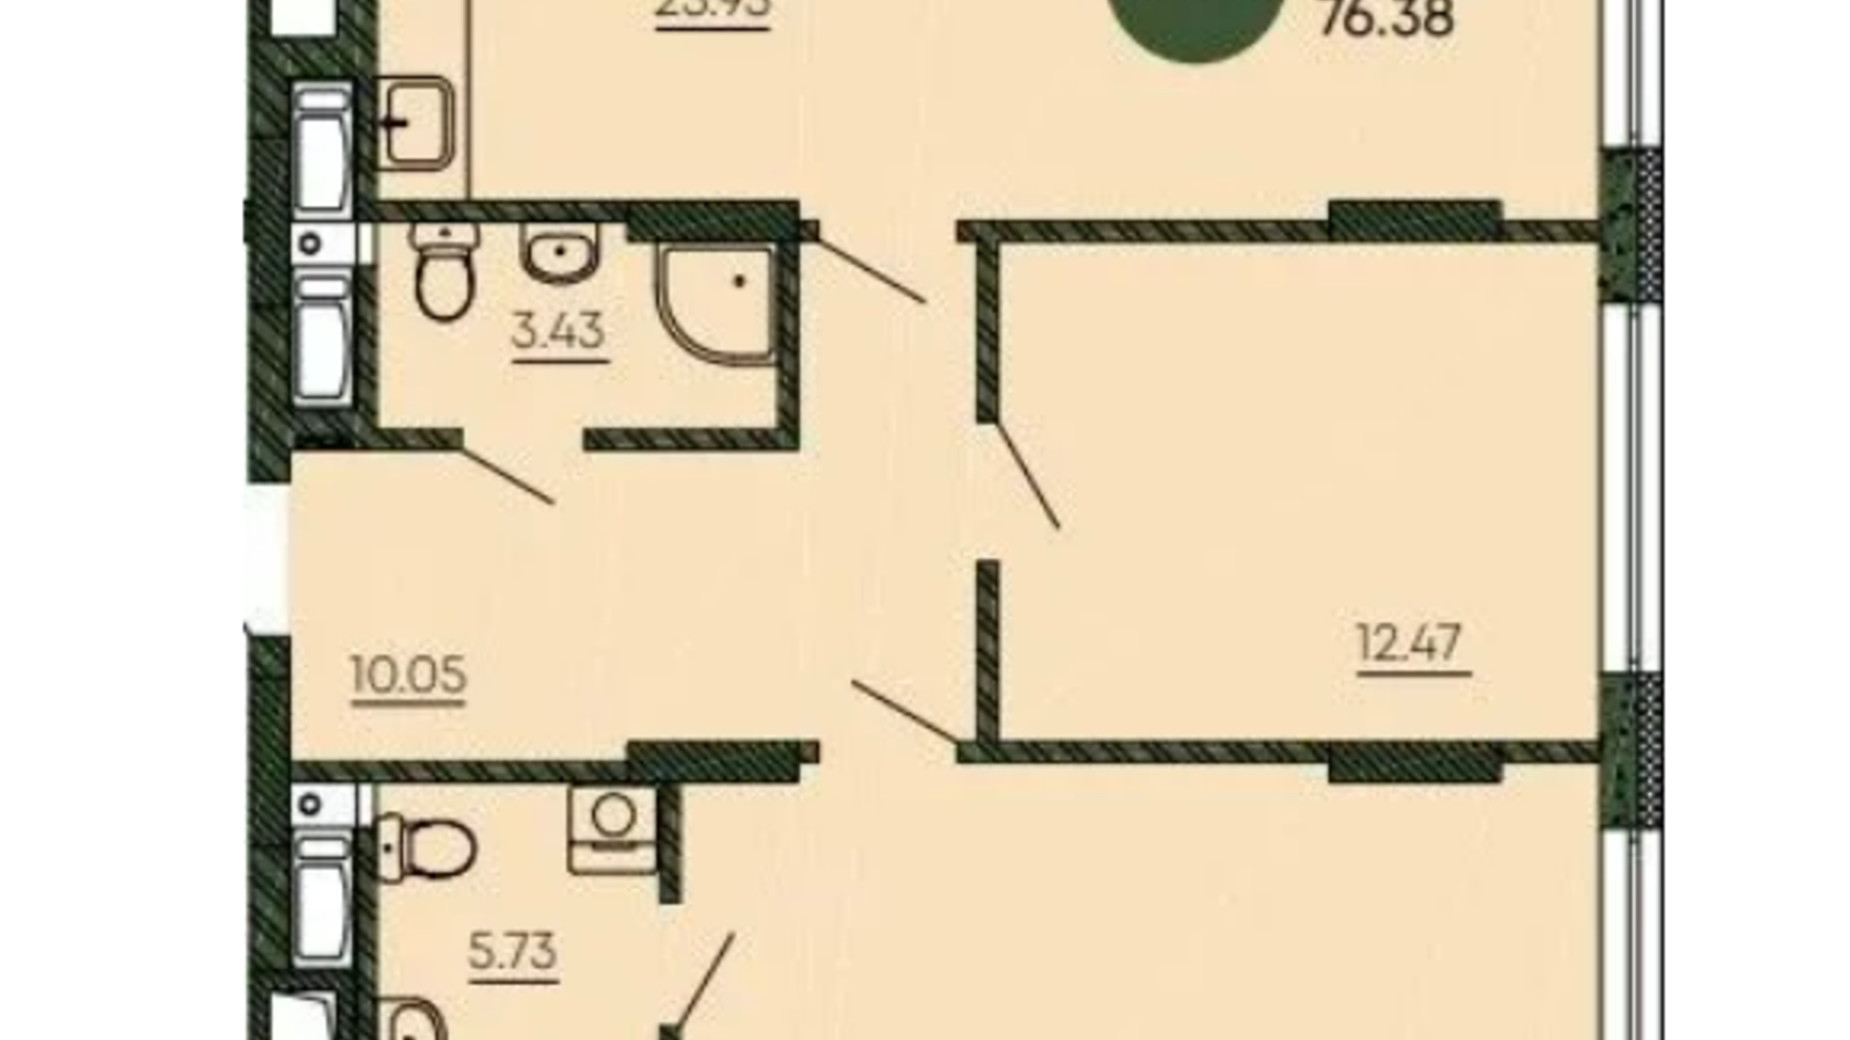 Планировка 2-комнатной квартиры в ЖК Оранжерея 76.38 м², фото 586480